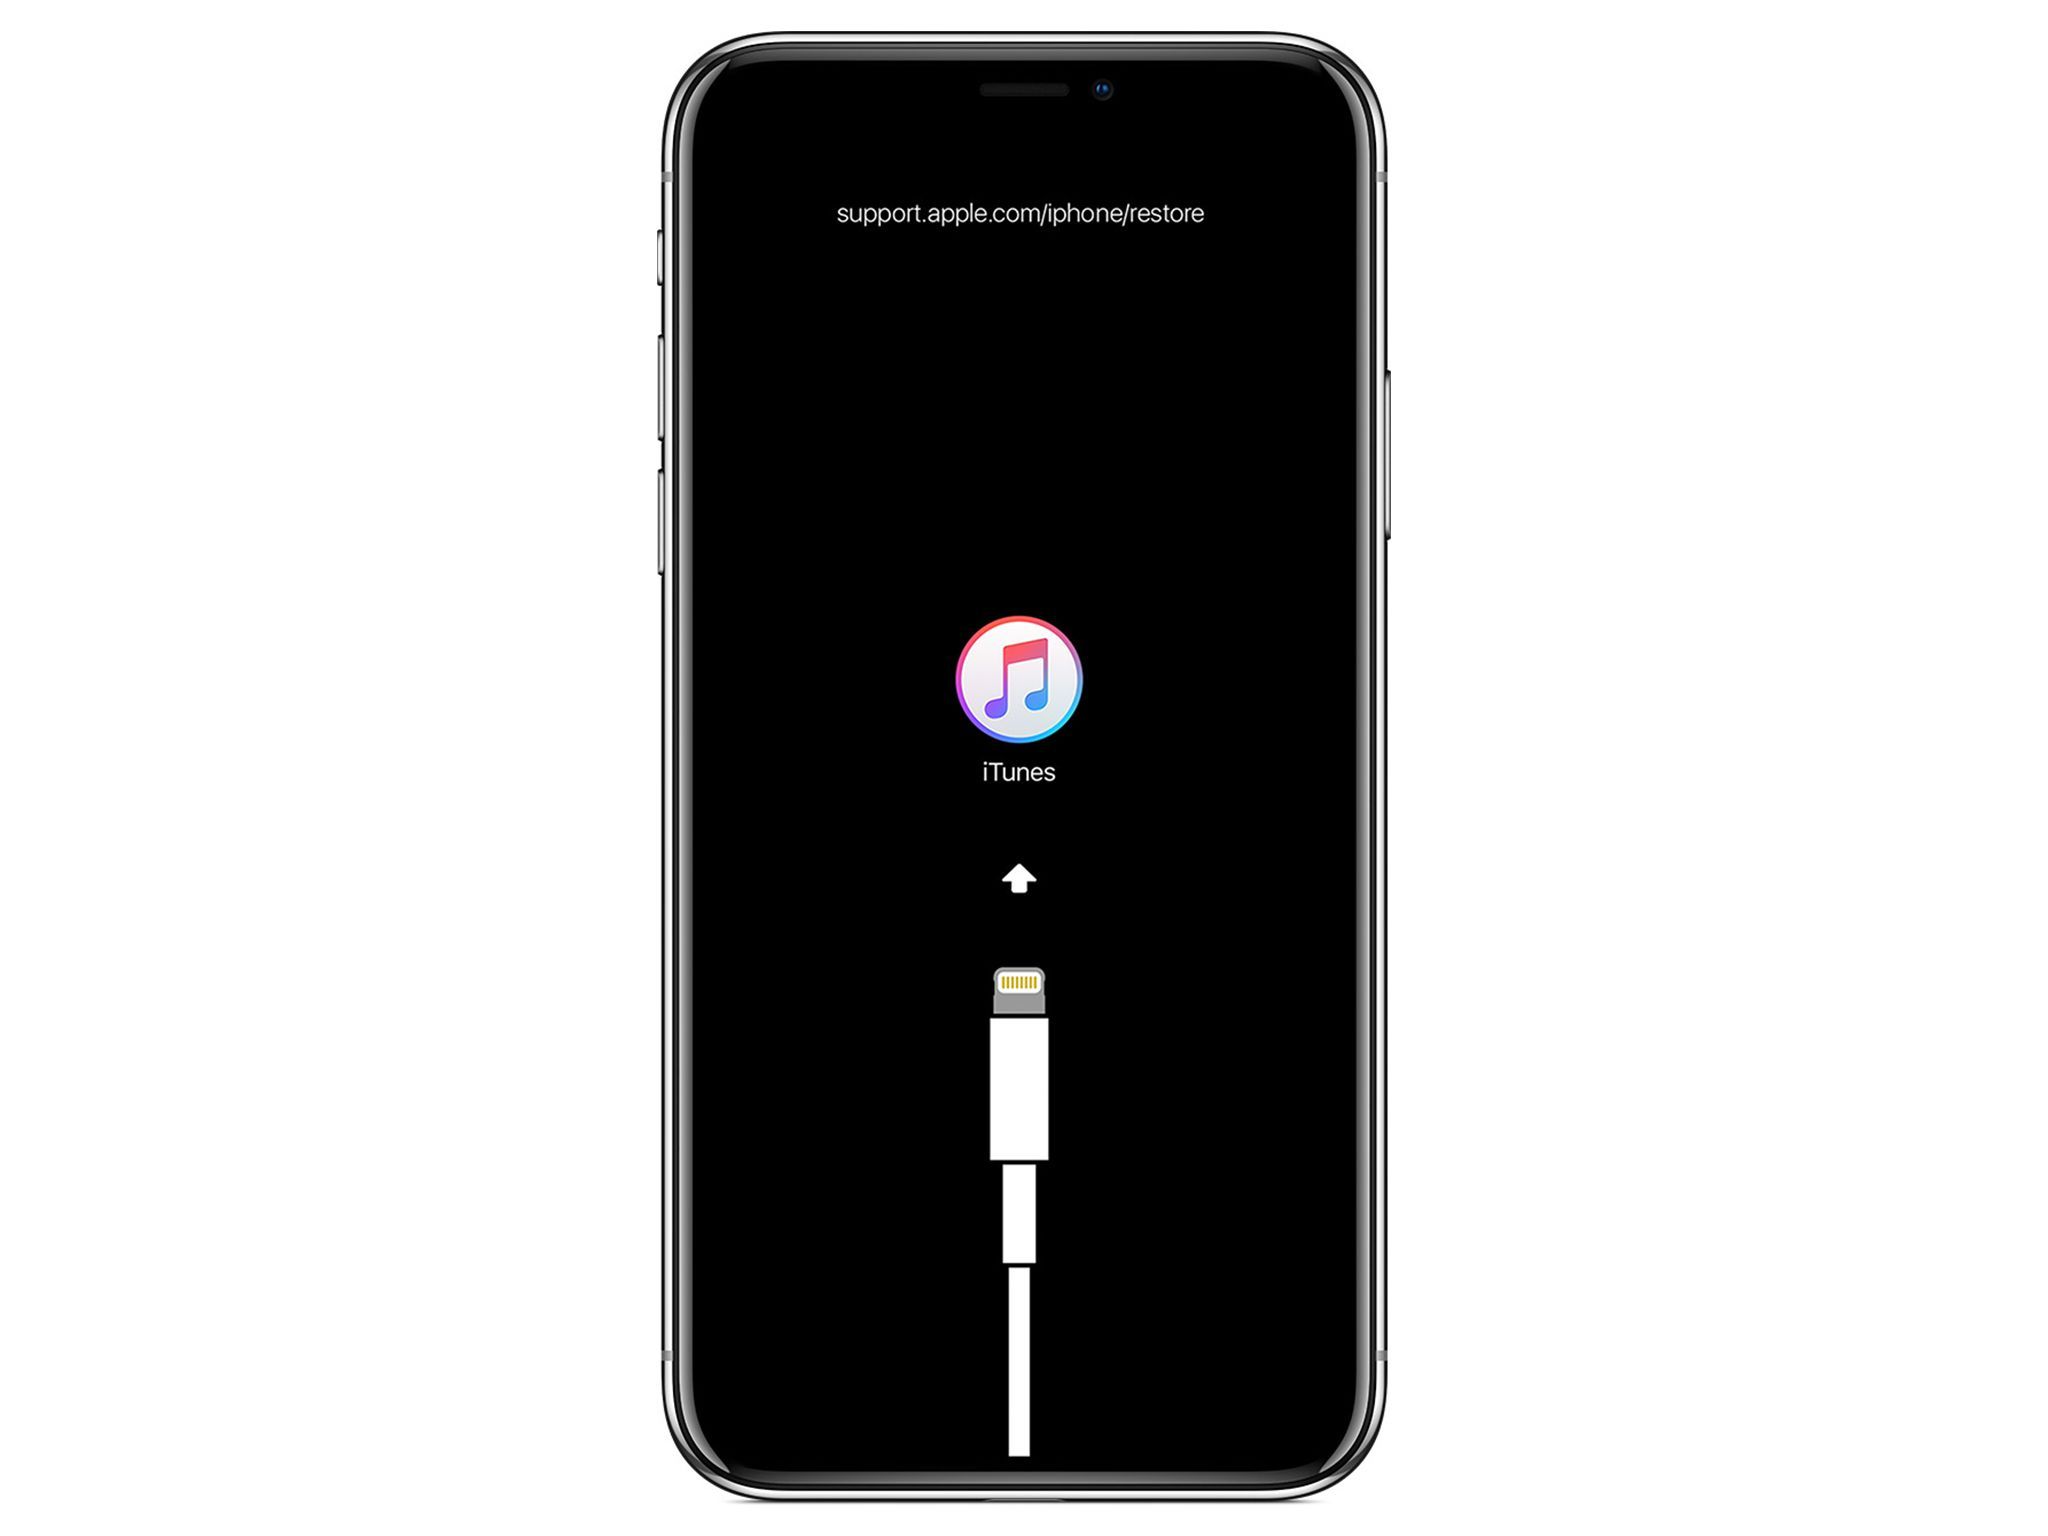 iPhone с восстановлением из iTunes изображений на его экране